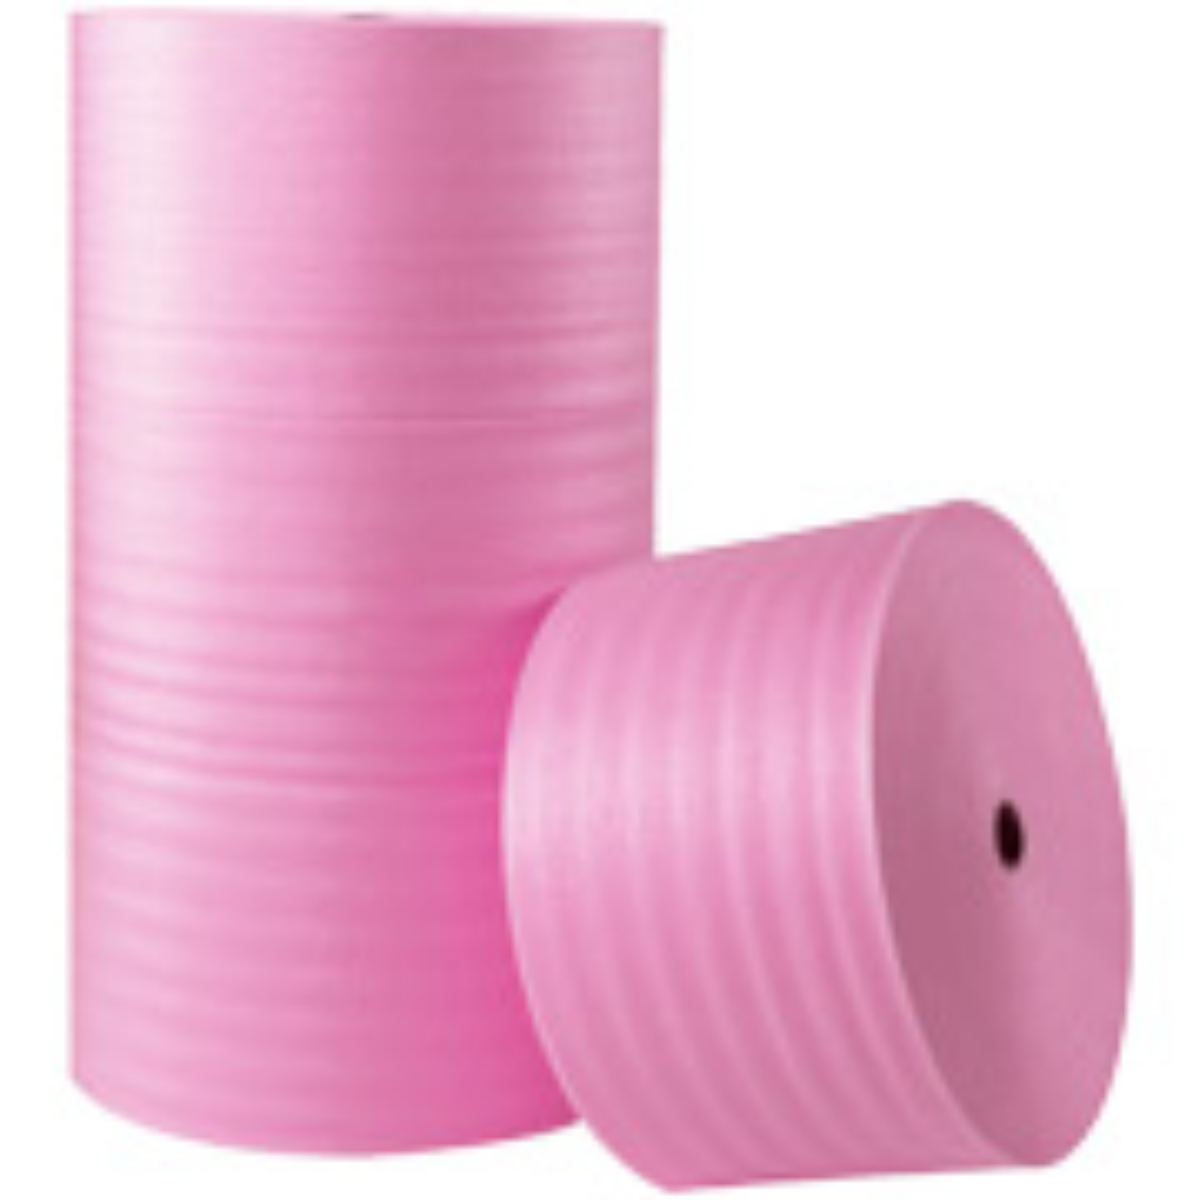 1/8″ x 72″ x 550′ Anti-Static Air Foam Roll 1 per Bundle